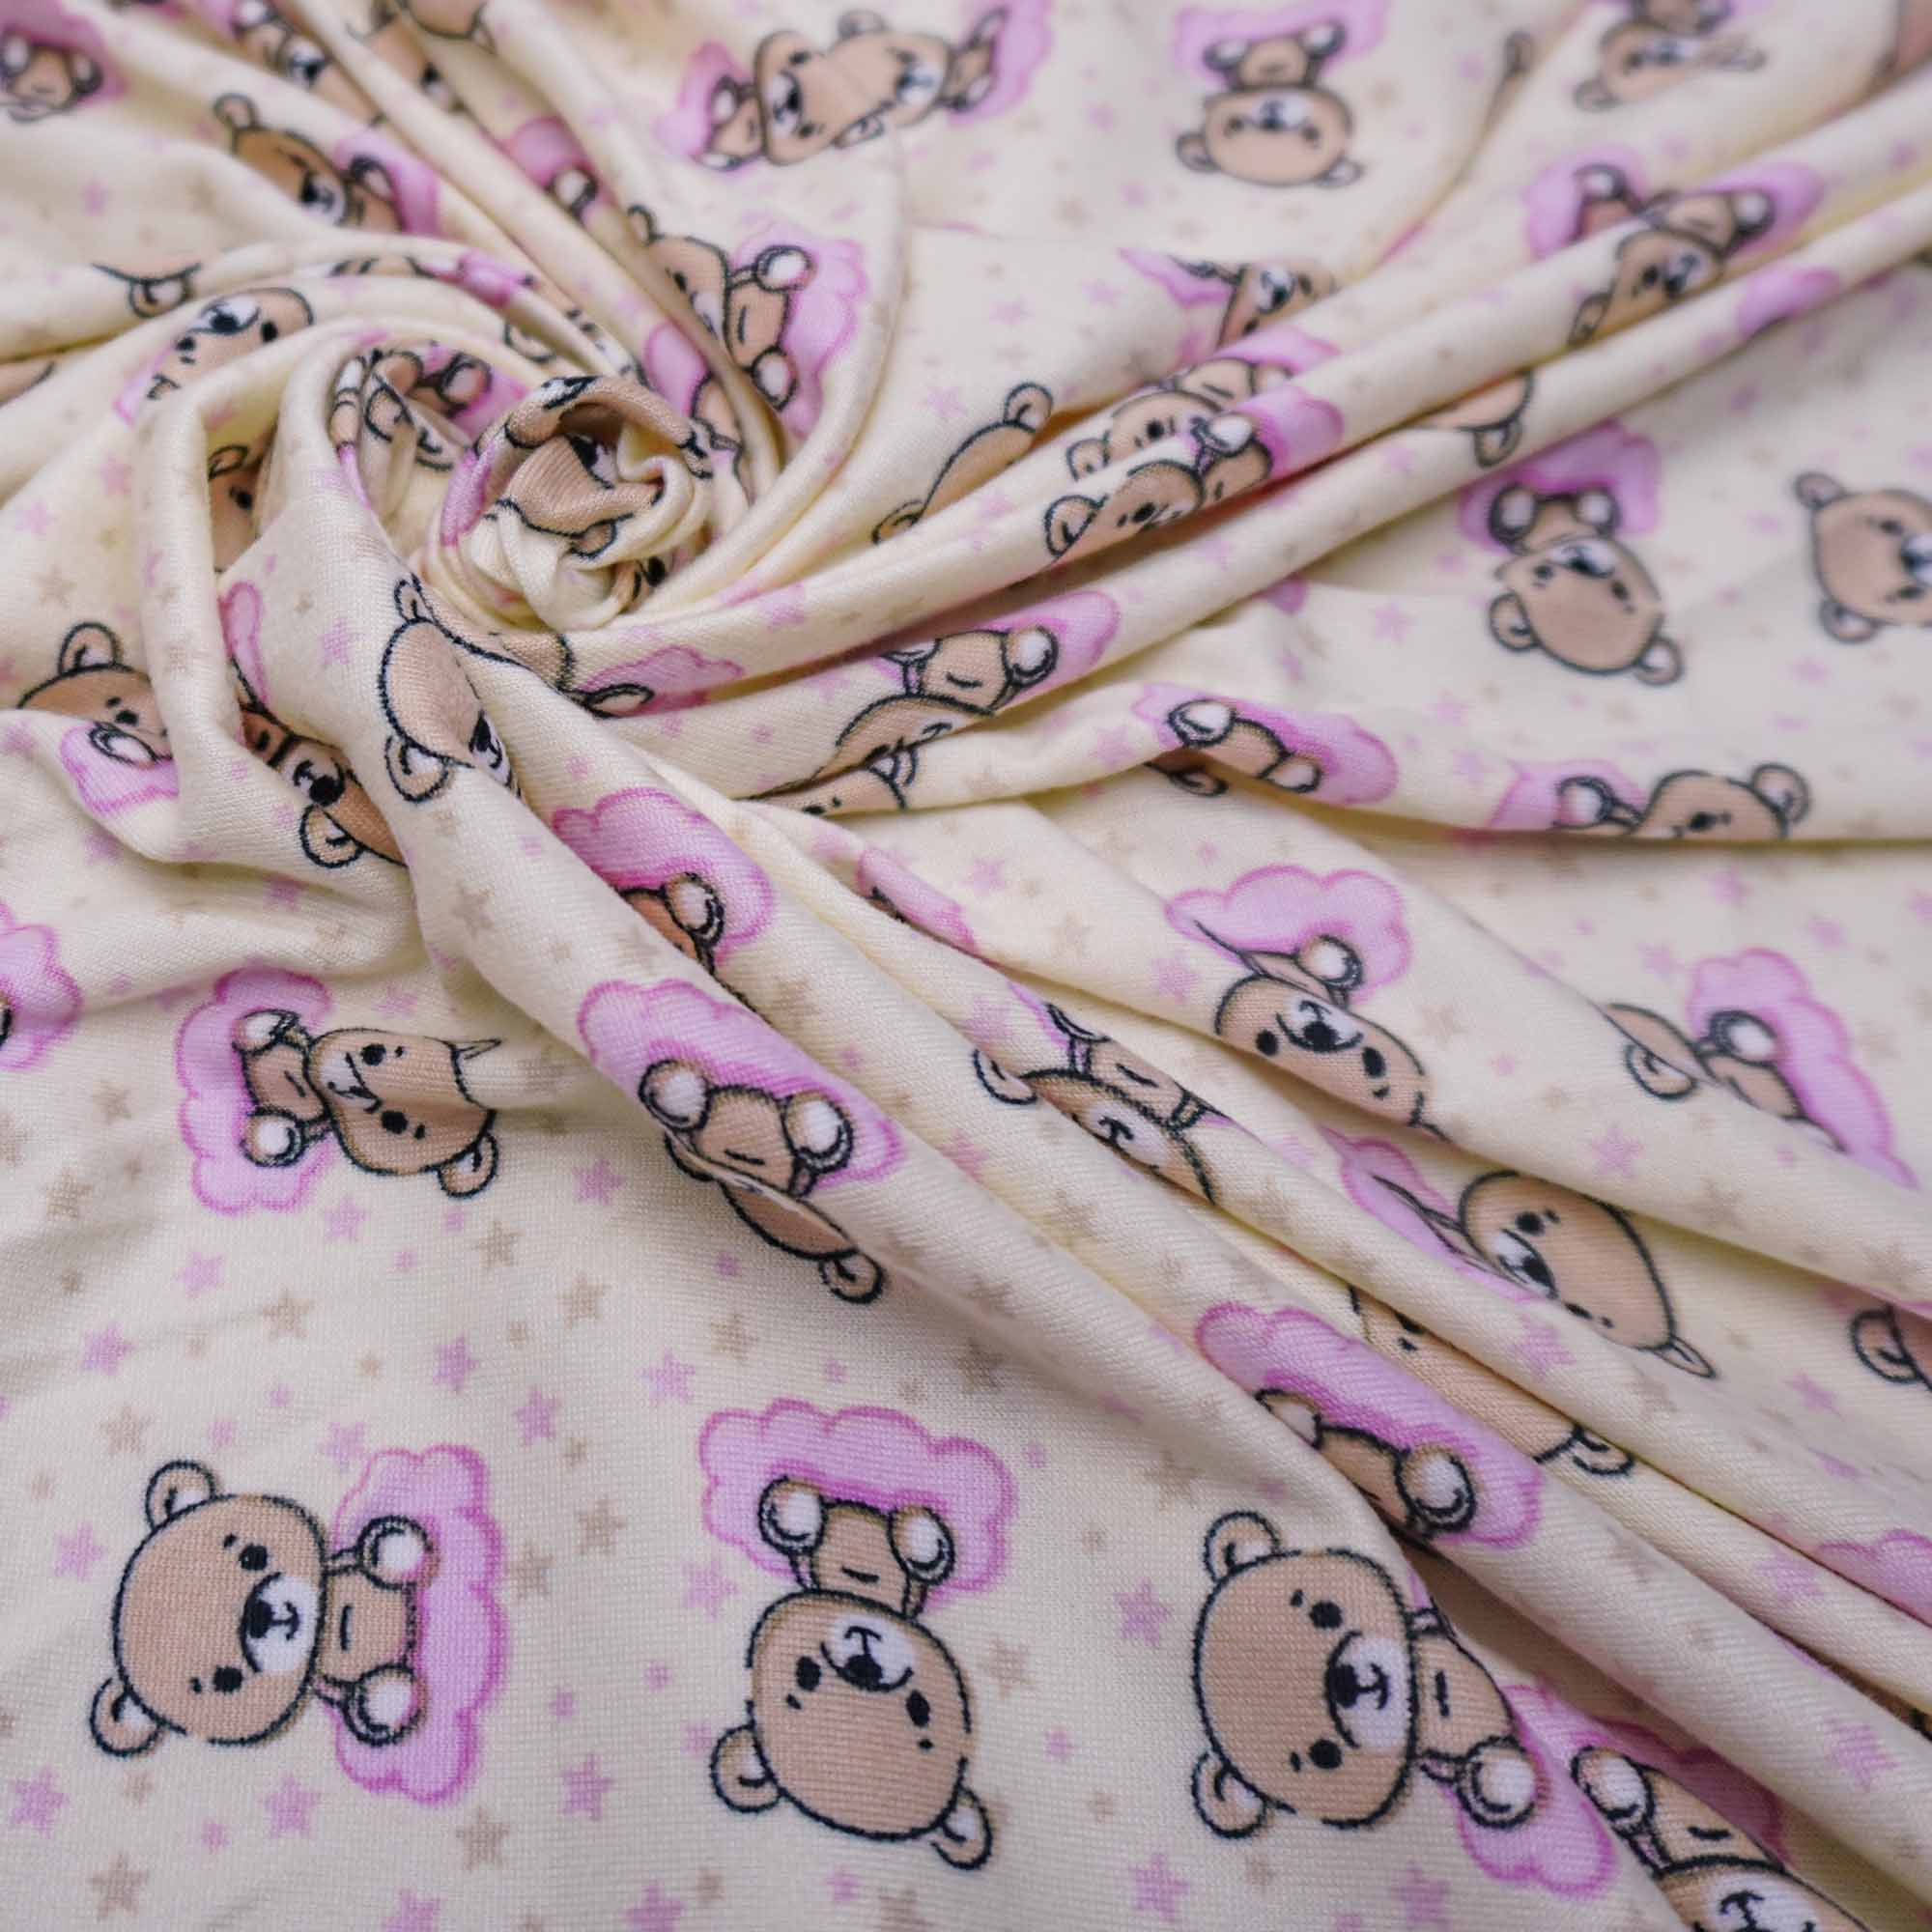 Tecido malha viscolycra suede estampado urso/nuvem rosa